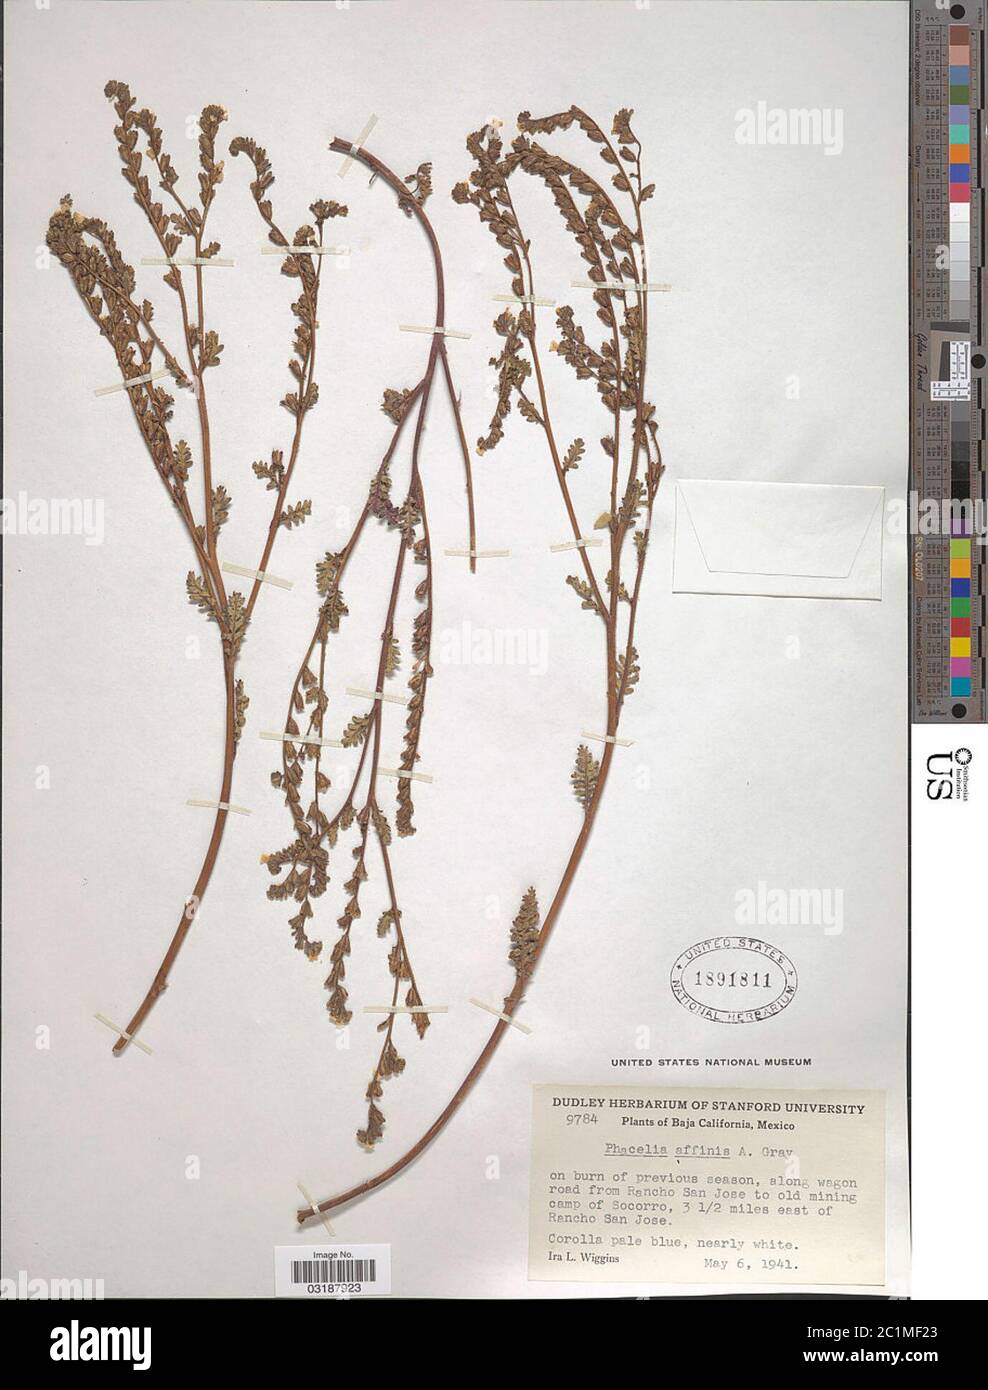 Phacelia affinis A Gray Phacelia affinis A Gray. Stock Photo